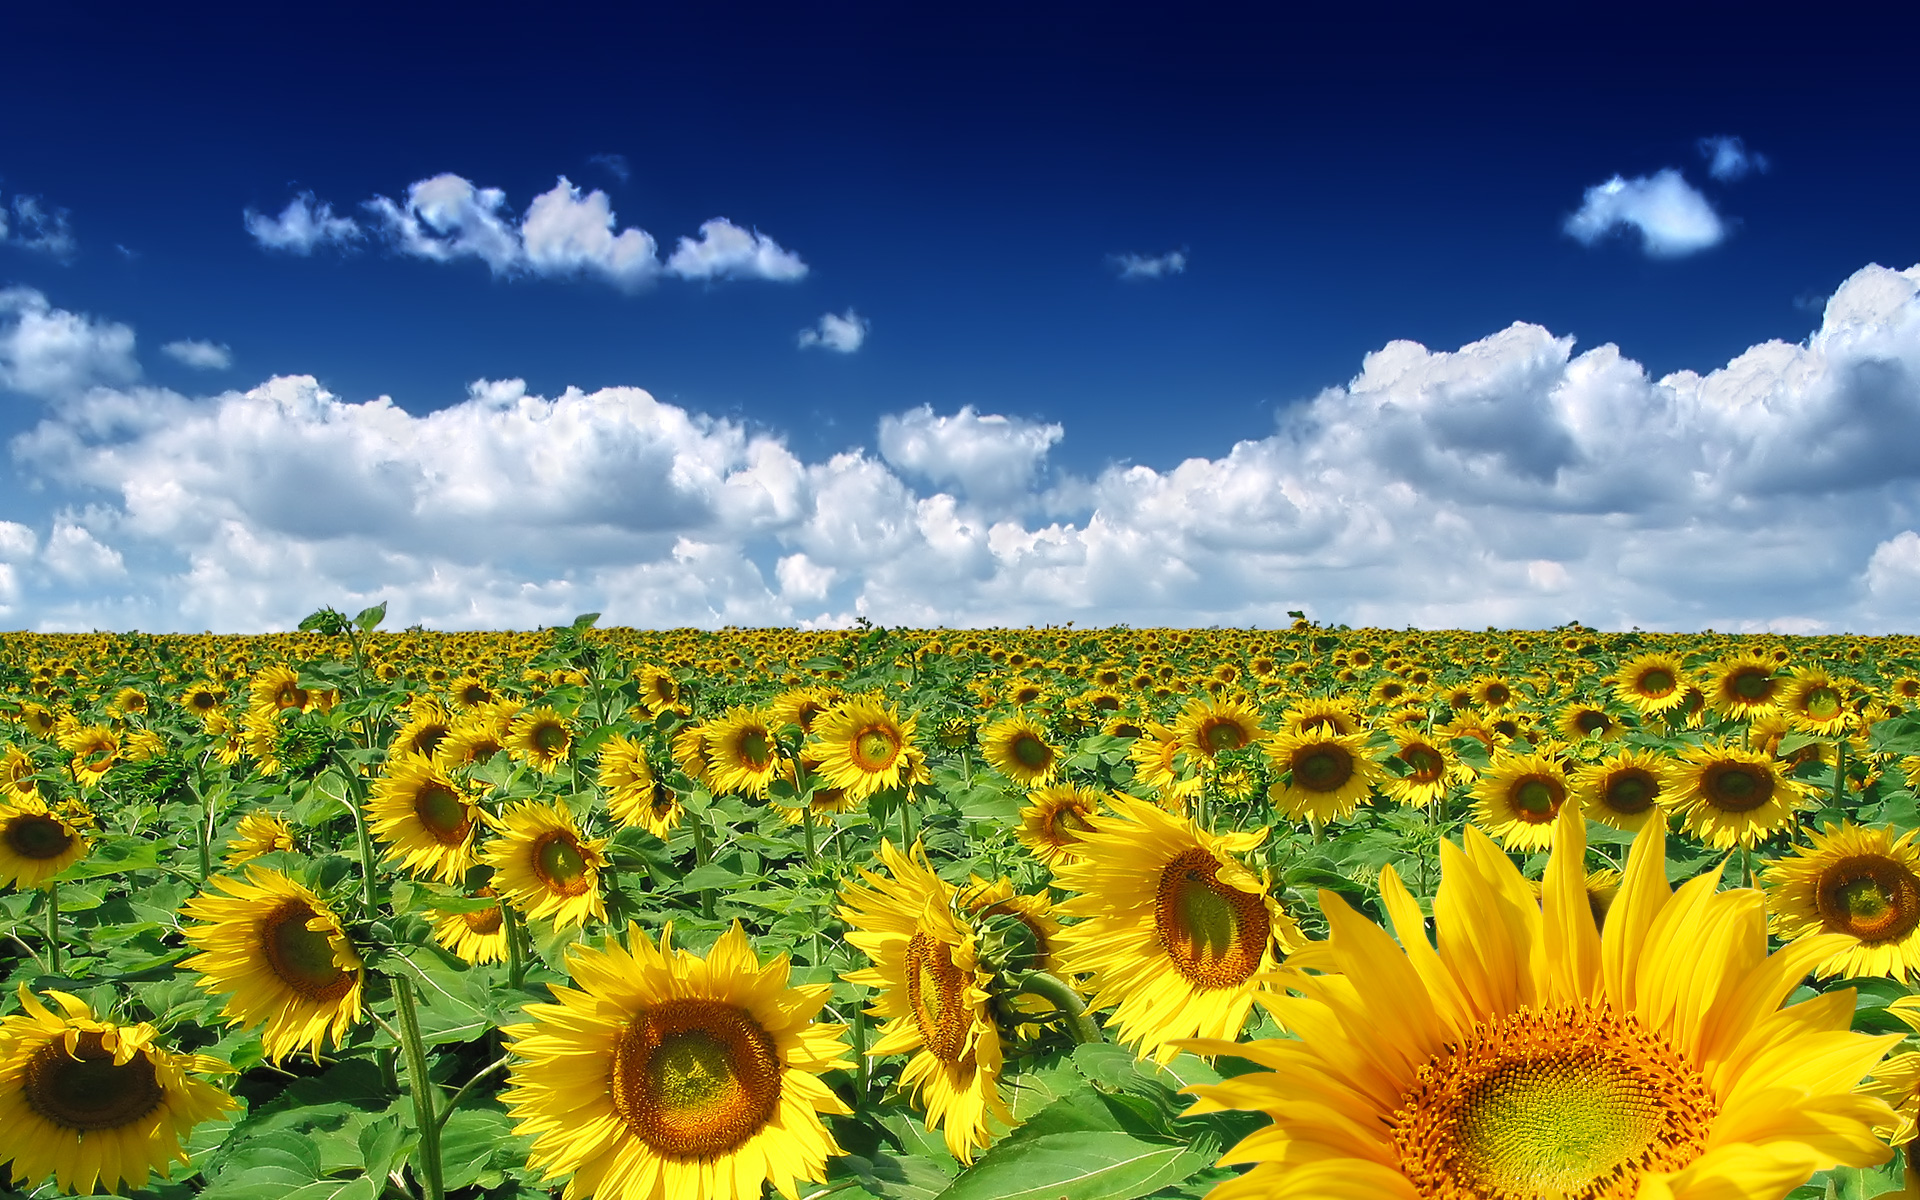 clouds, nature, sunflowers - desktop wallpaper